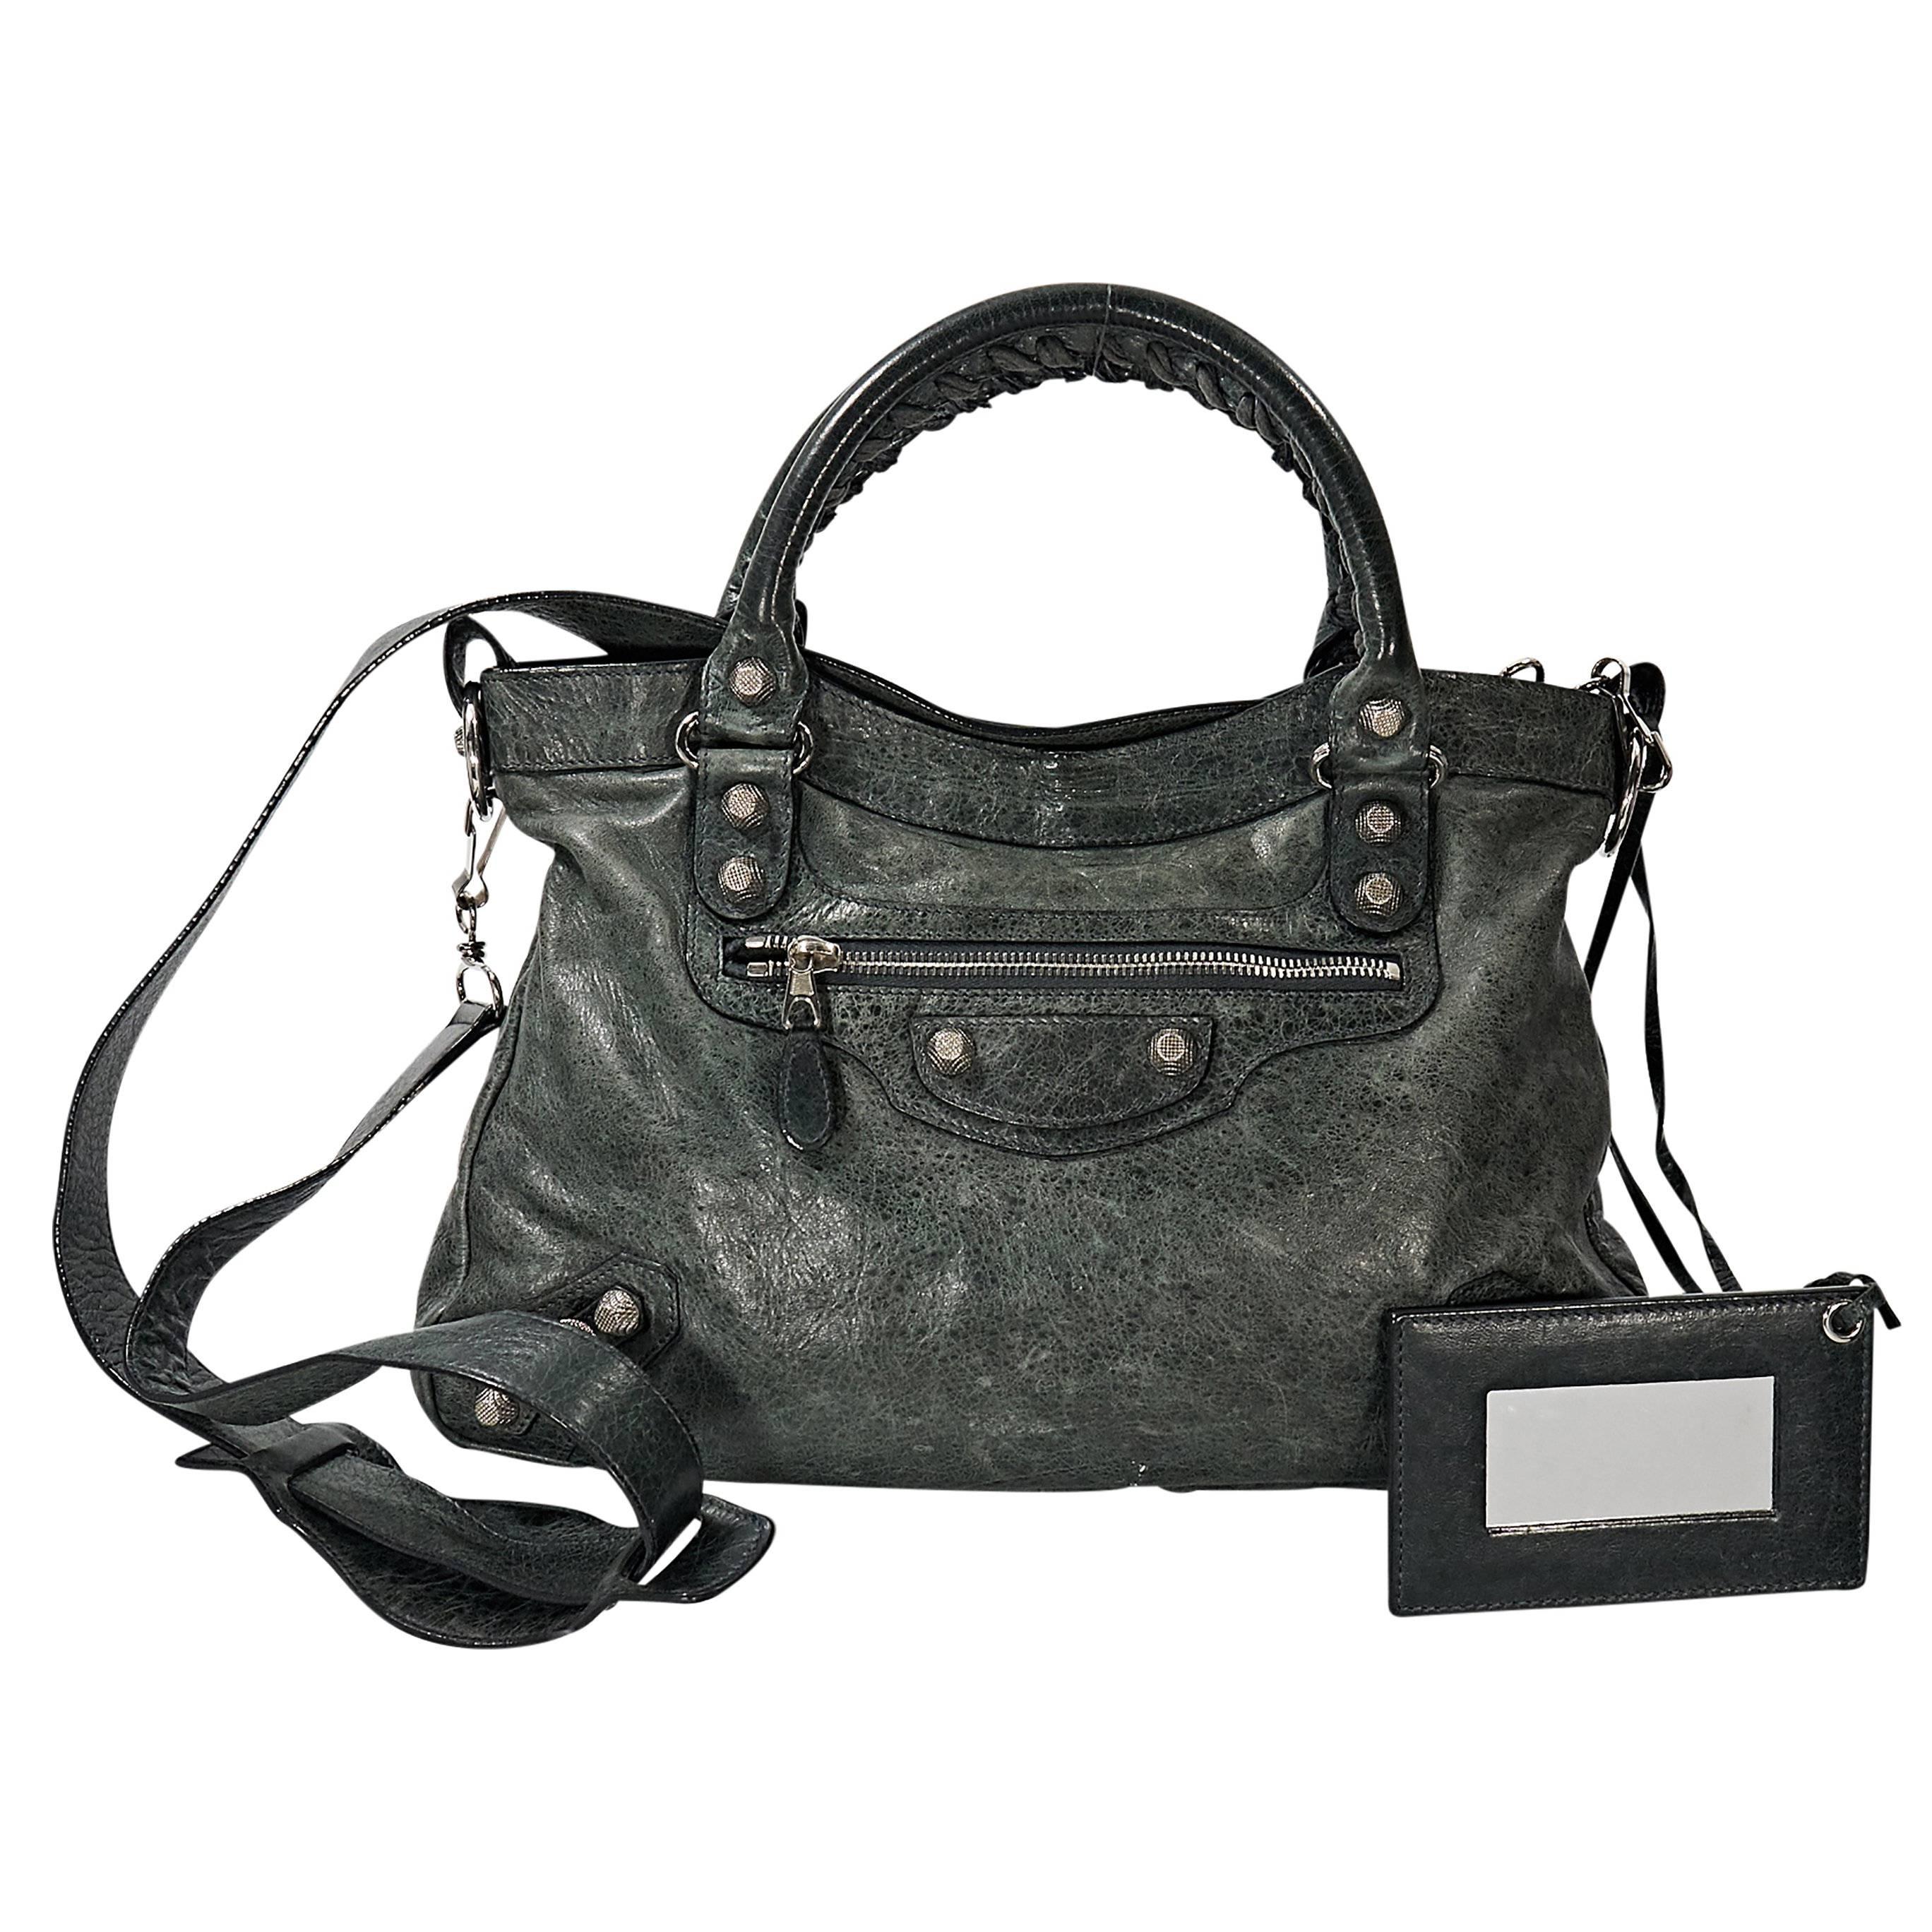 Balenciaga City Bag Grey - 2 For Sale on 1stDibs